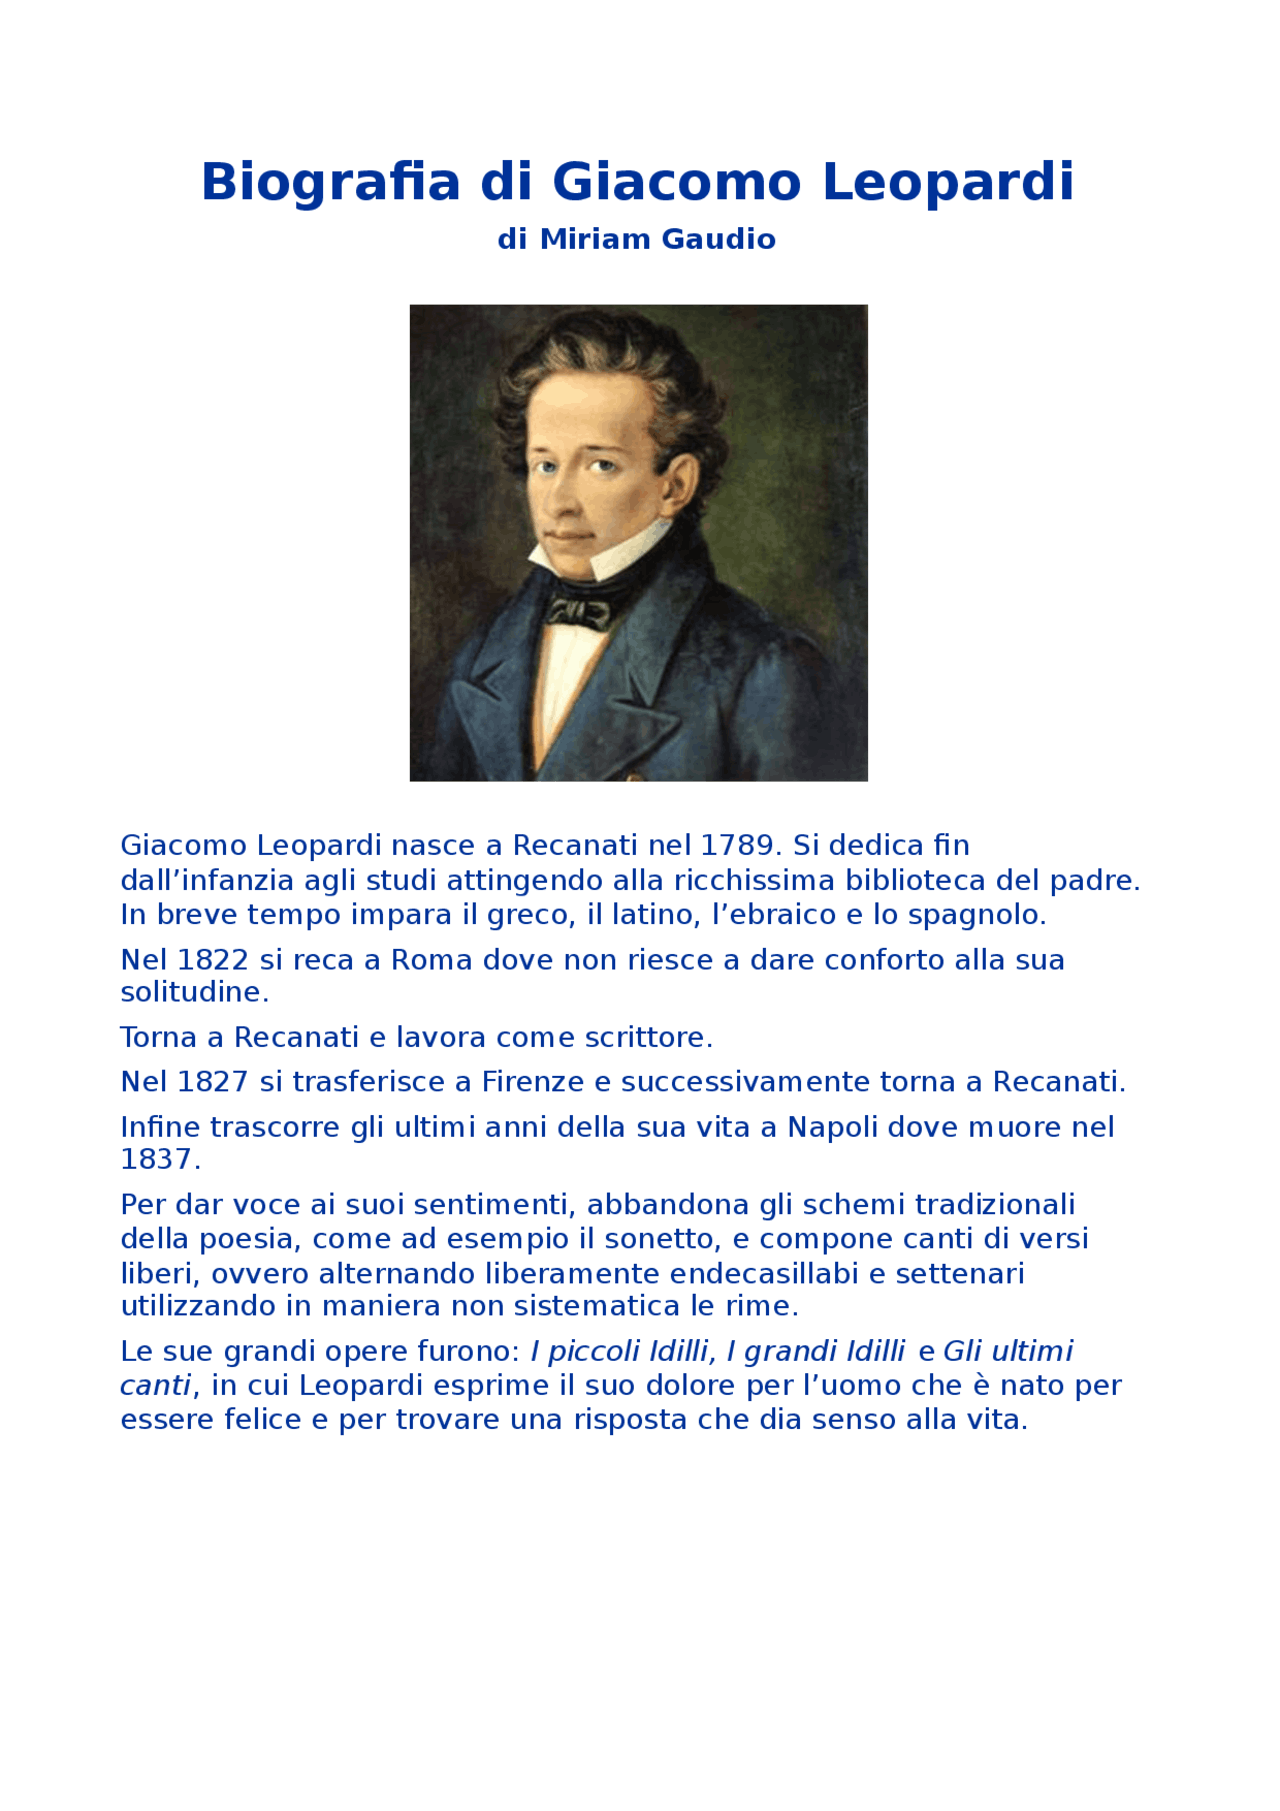  Biografia Giacomo Leopardiego